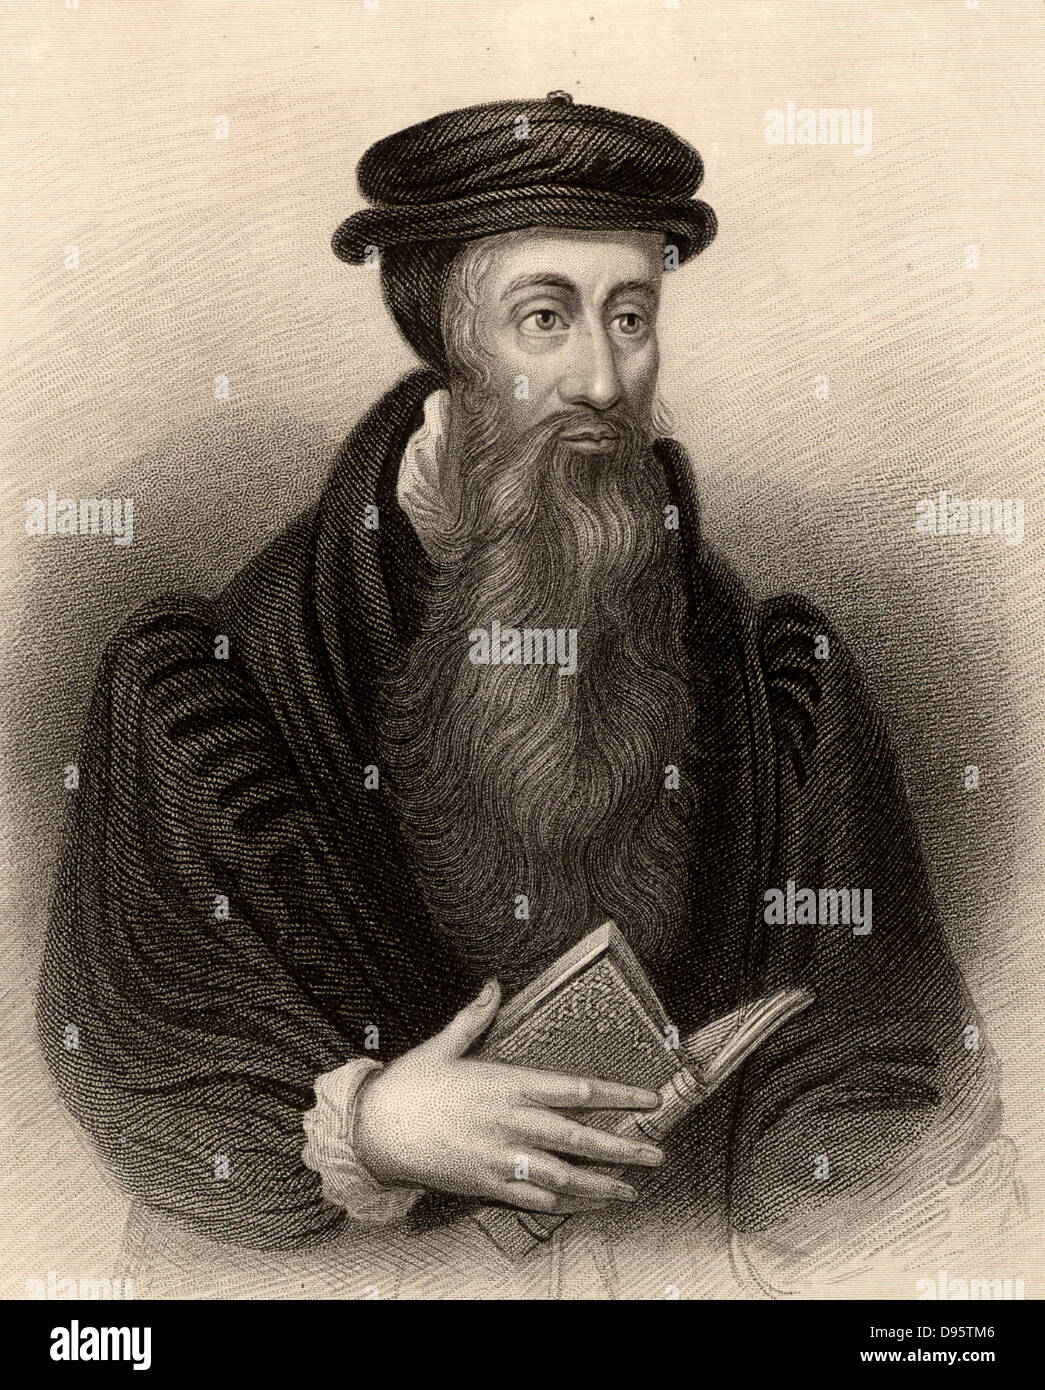 John Knox (1505-1572) escocés) reformador protestante (calvinista. Grabado de un "Diccionario Biográfico de eminentes Scotsmen' de Thomas Thomson (1870), Londres y Edimburgo. Foto de stock